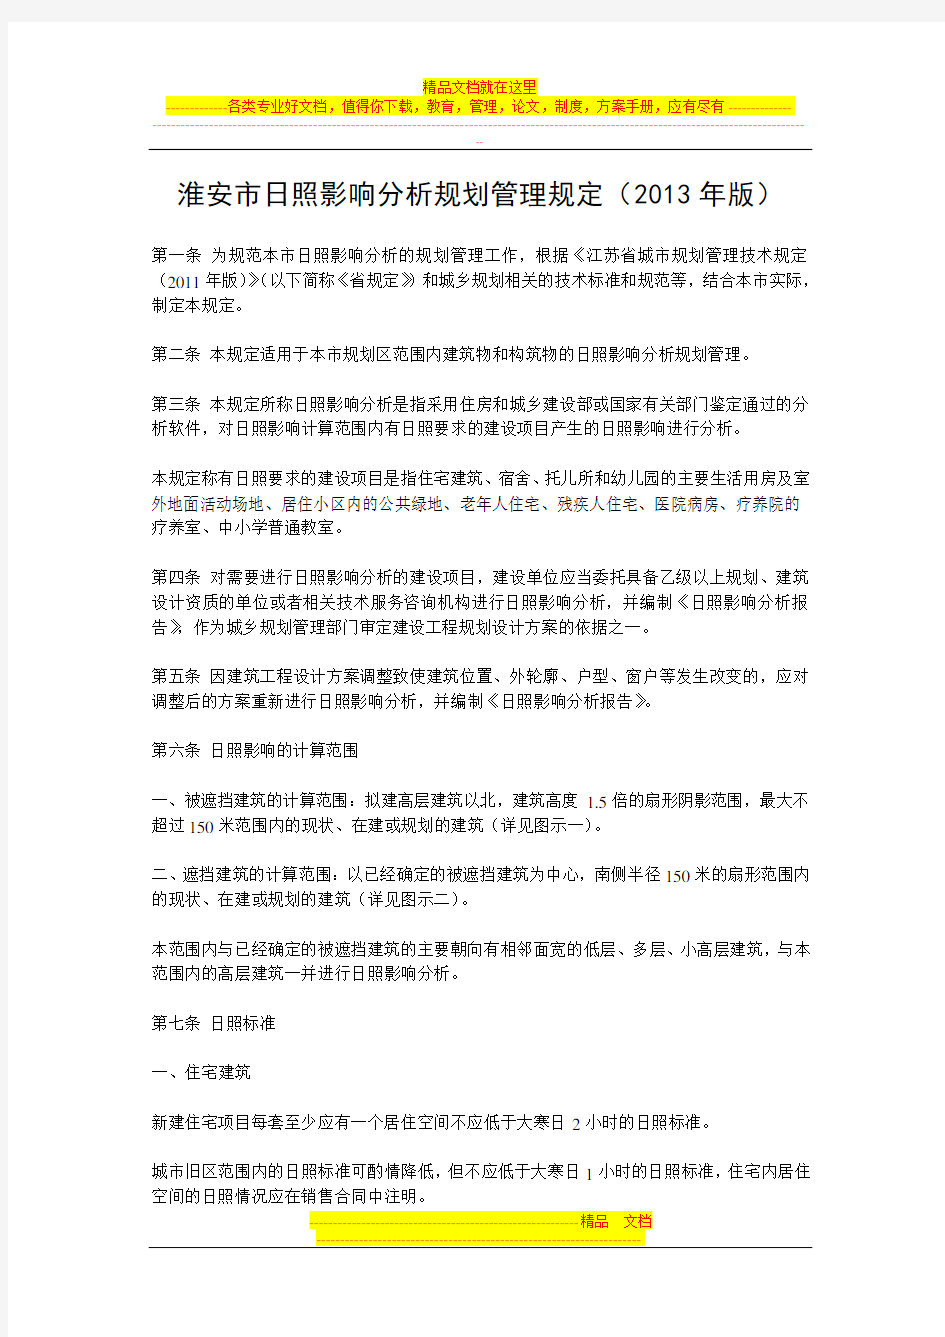 淮安市日照影响分析规划管理规定(2013年版)